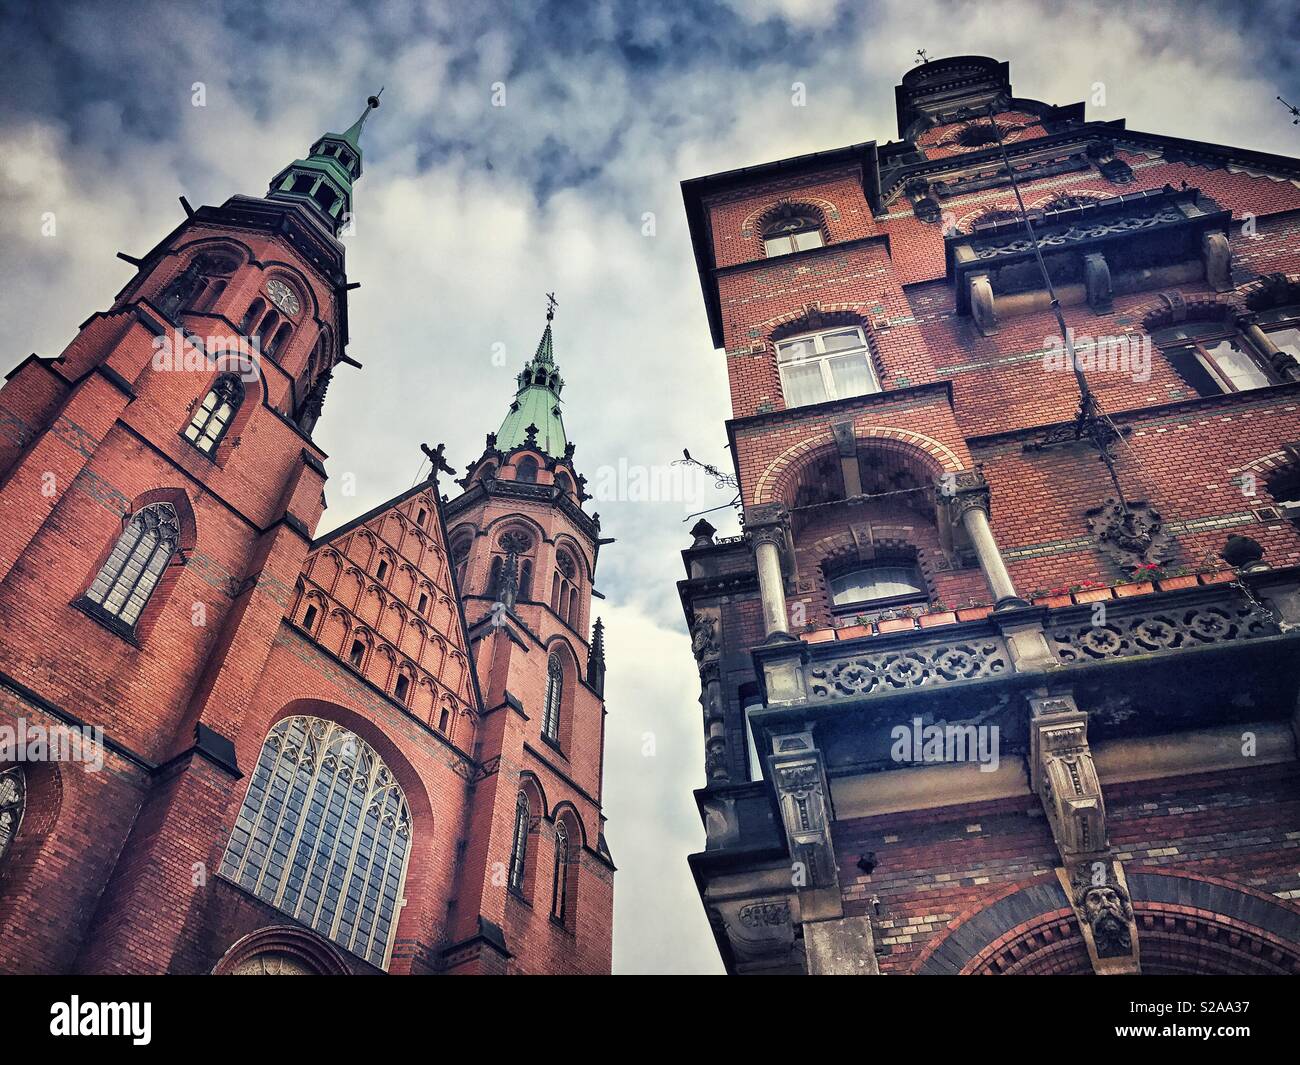 Gothic Architecture in Main Market Square, Legnica, Poland Stock Photo